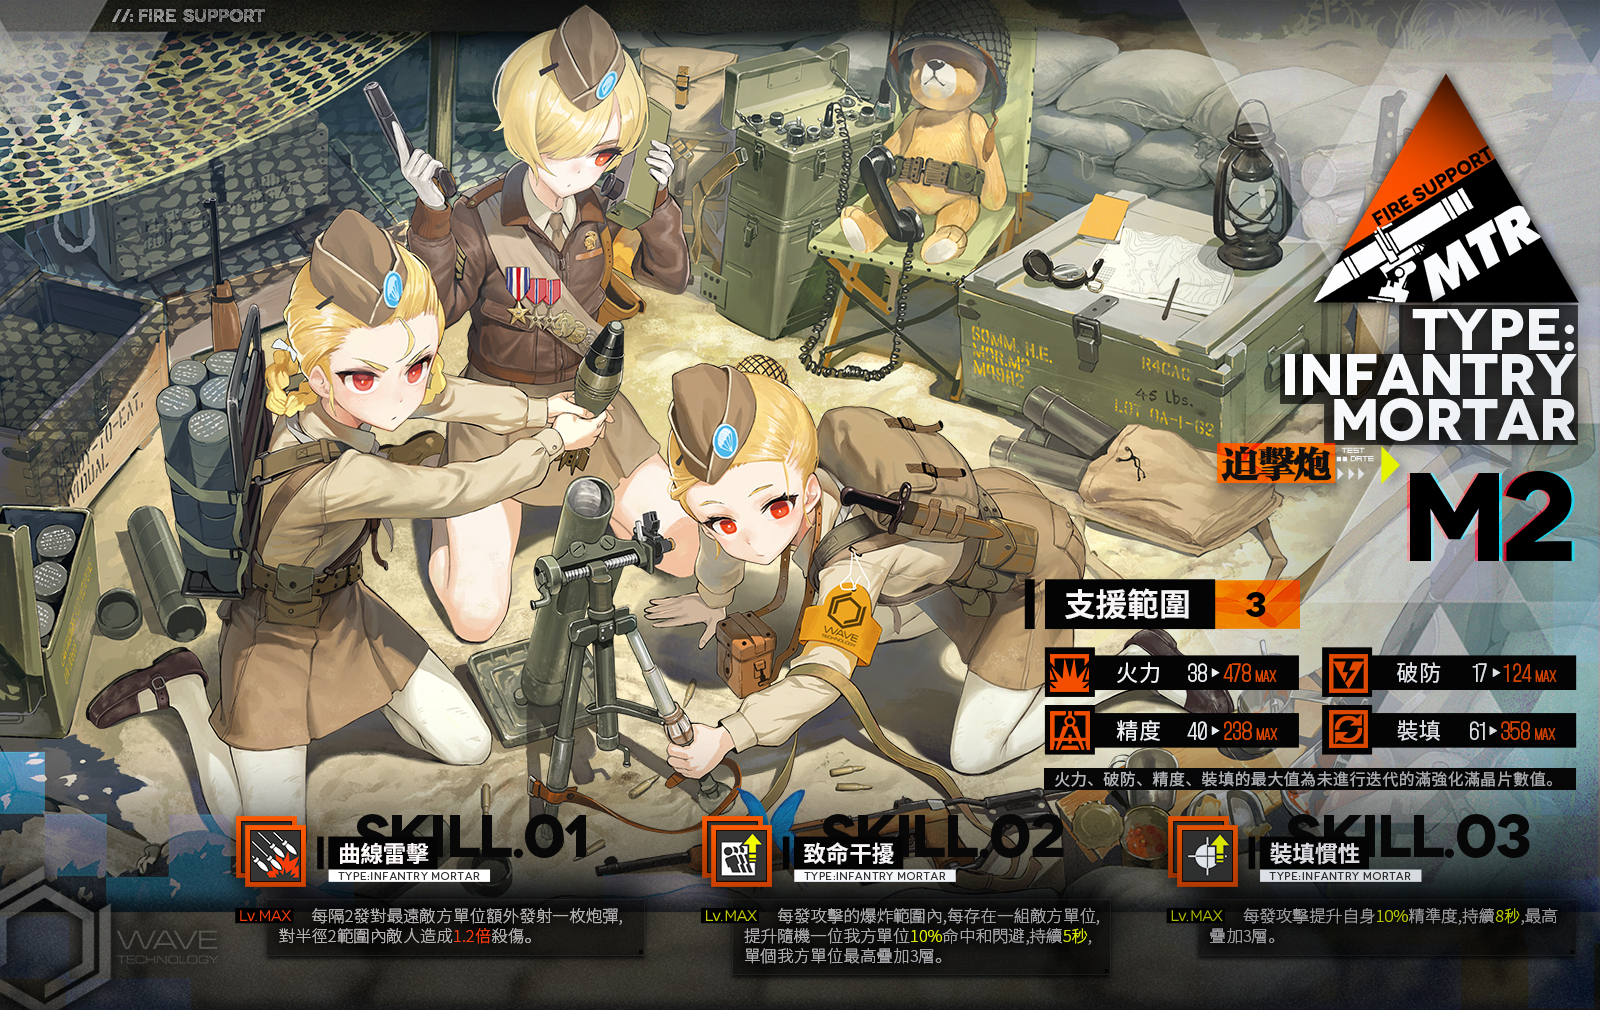 【情報】全新重裝部隊詳細介紹——「M2迫擊炮」